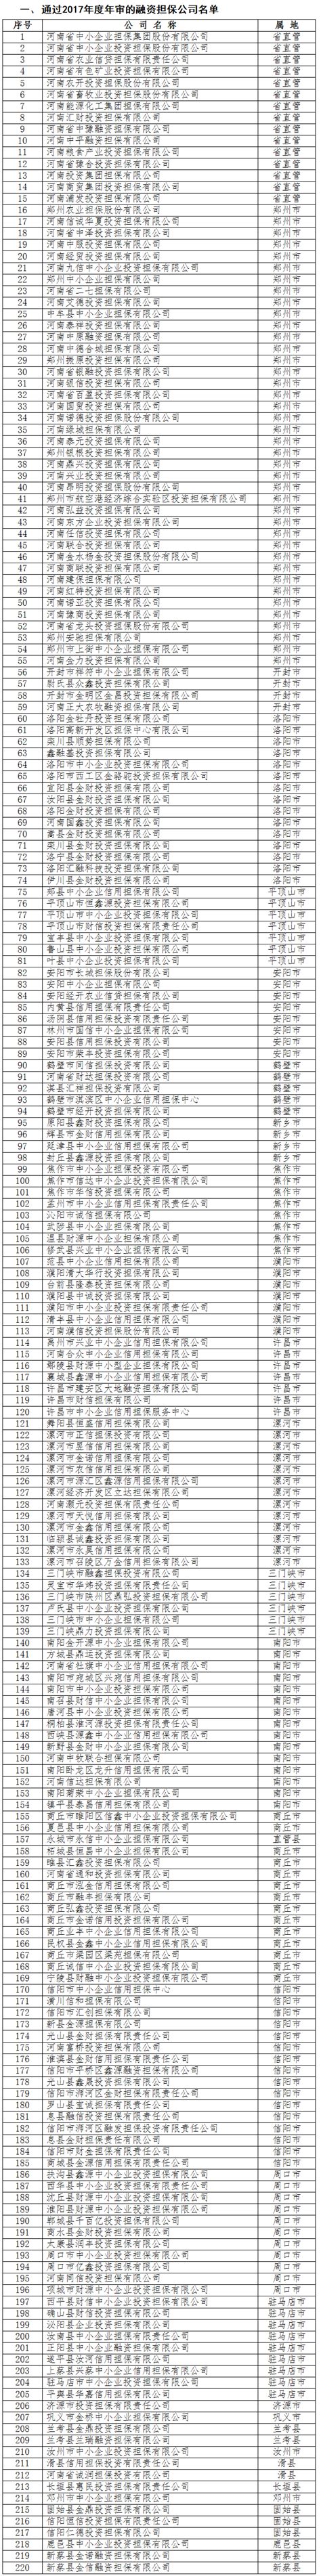 河南220家融资担保、210家小额贷款公司通过年审 | 名单